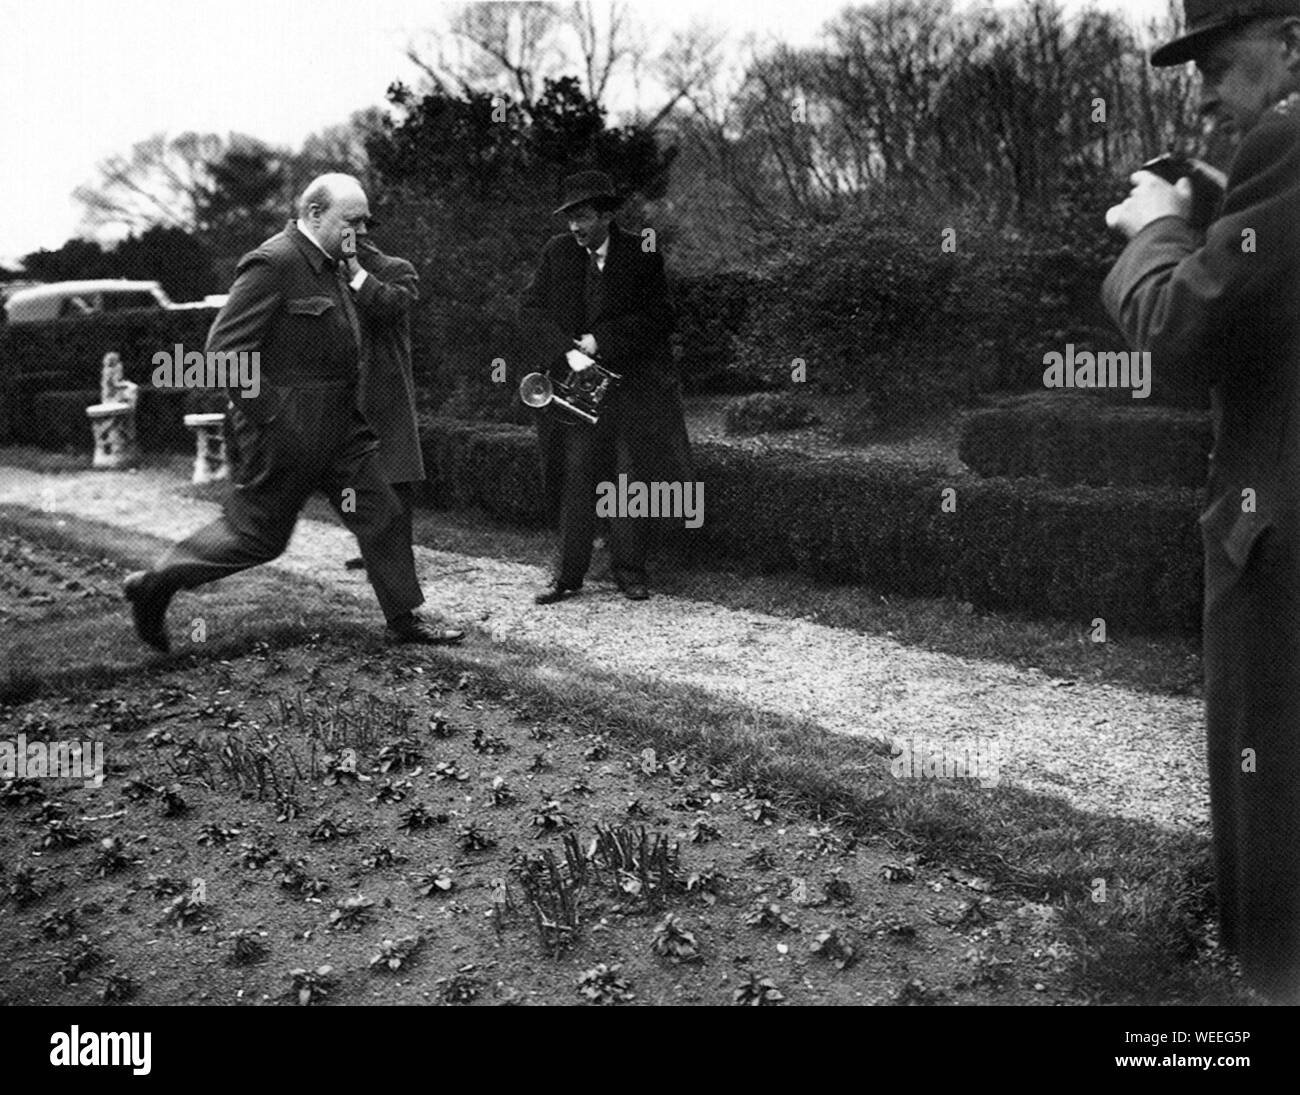 Winston Churchill portant son costume de marque 'siren' dans le jardin de la Maison Blanche. Décembre 1941 Banque D'Images